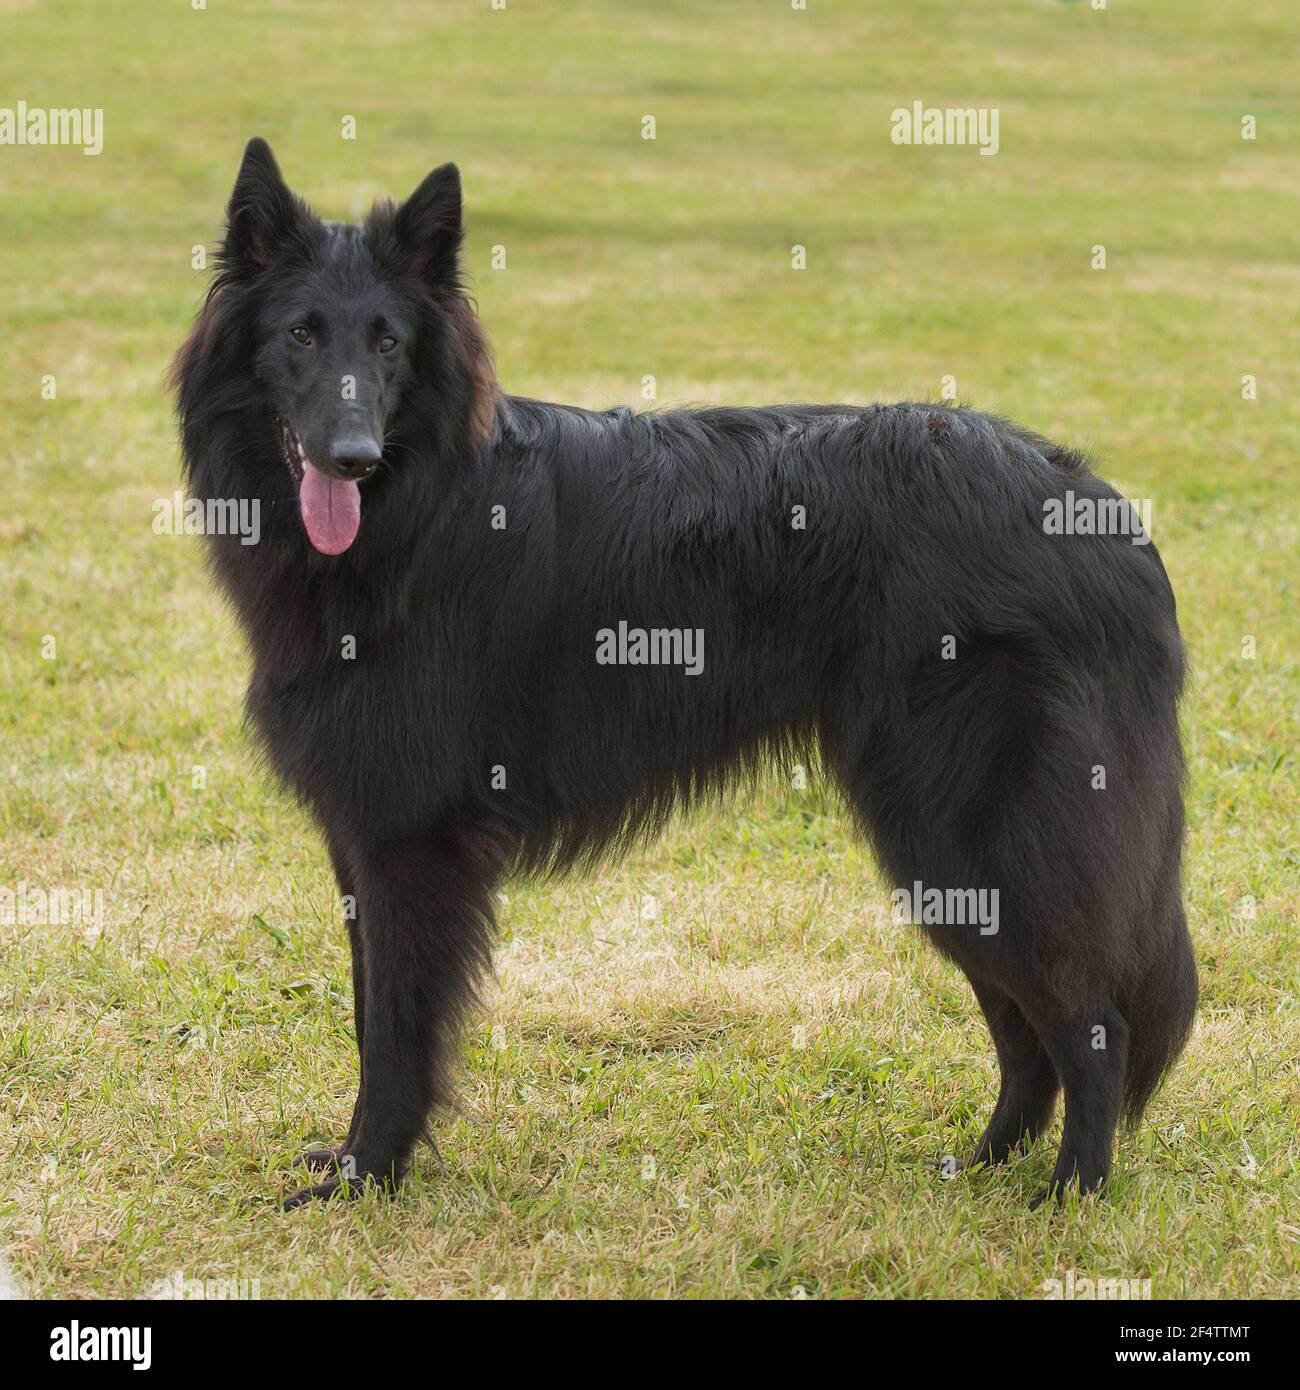 Belgian shepherd dog Stock Photo